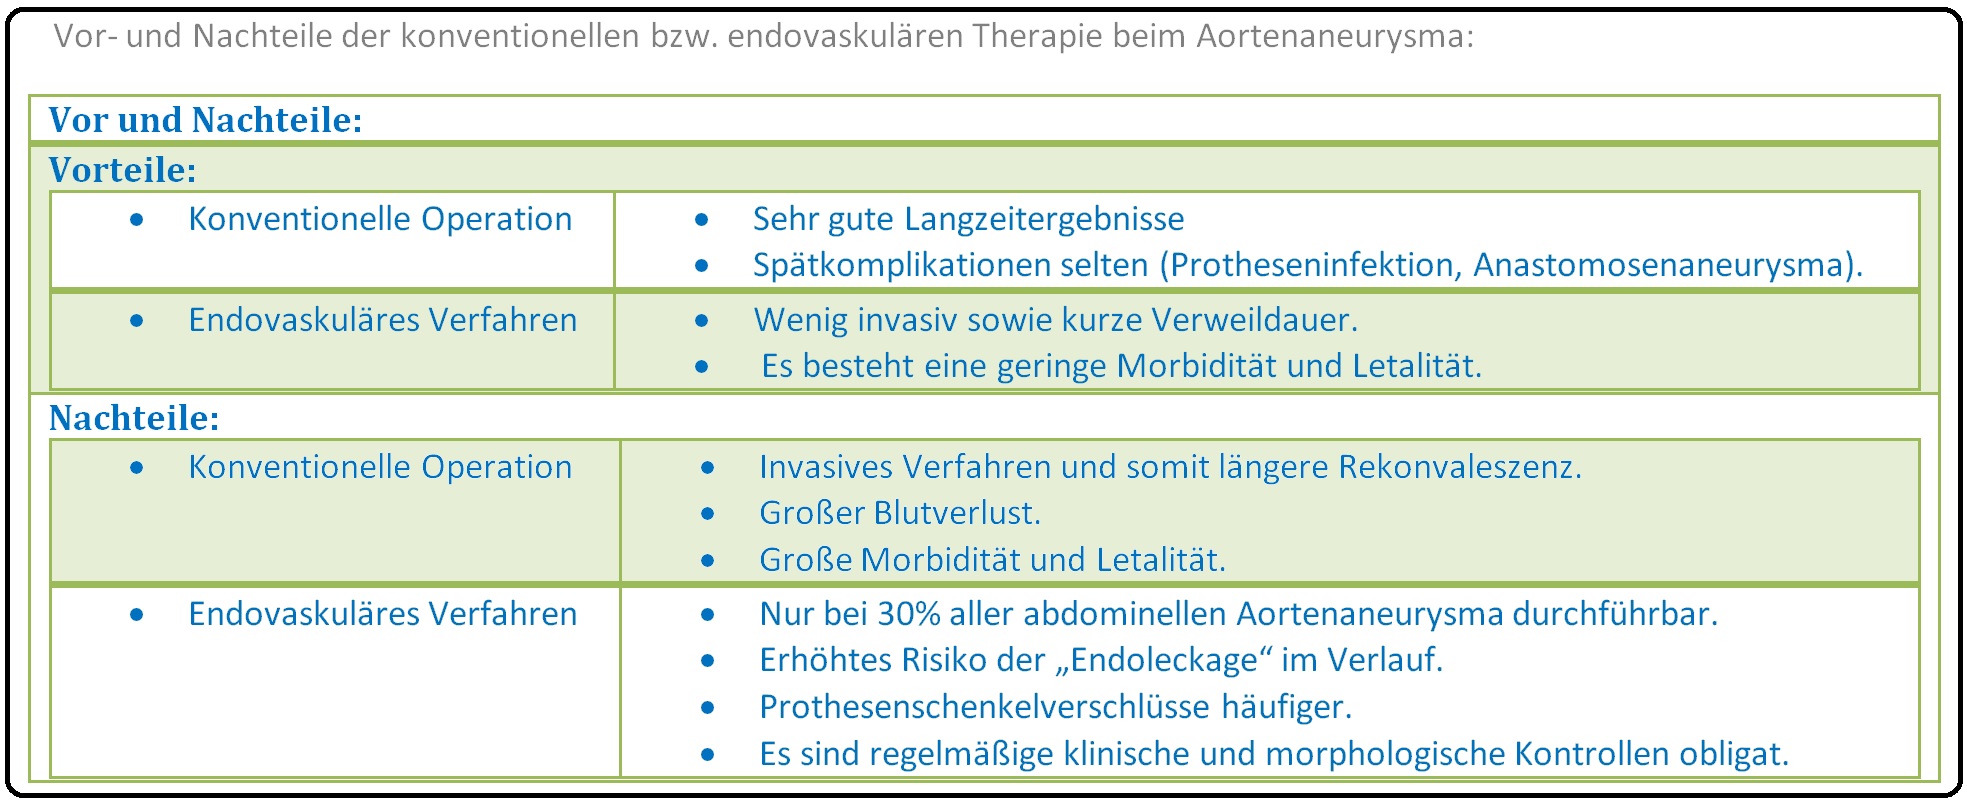 645 Vor  und Nachteile der konventionellen bzw. endovaskulären Therapie bei Aortenaneurysma